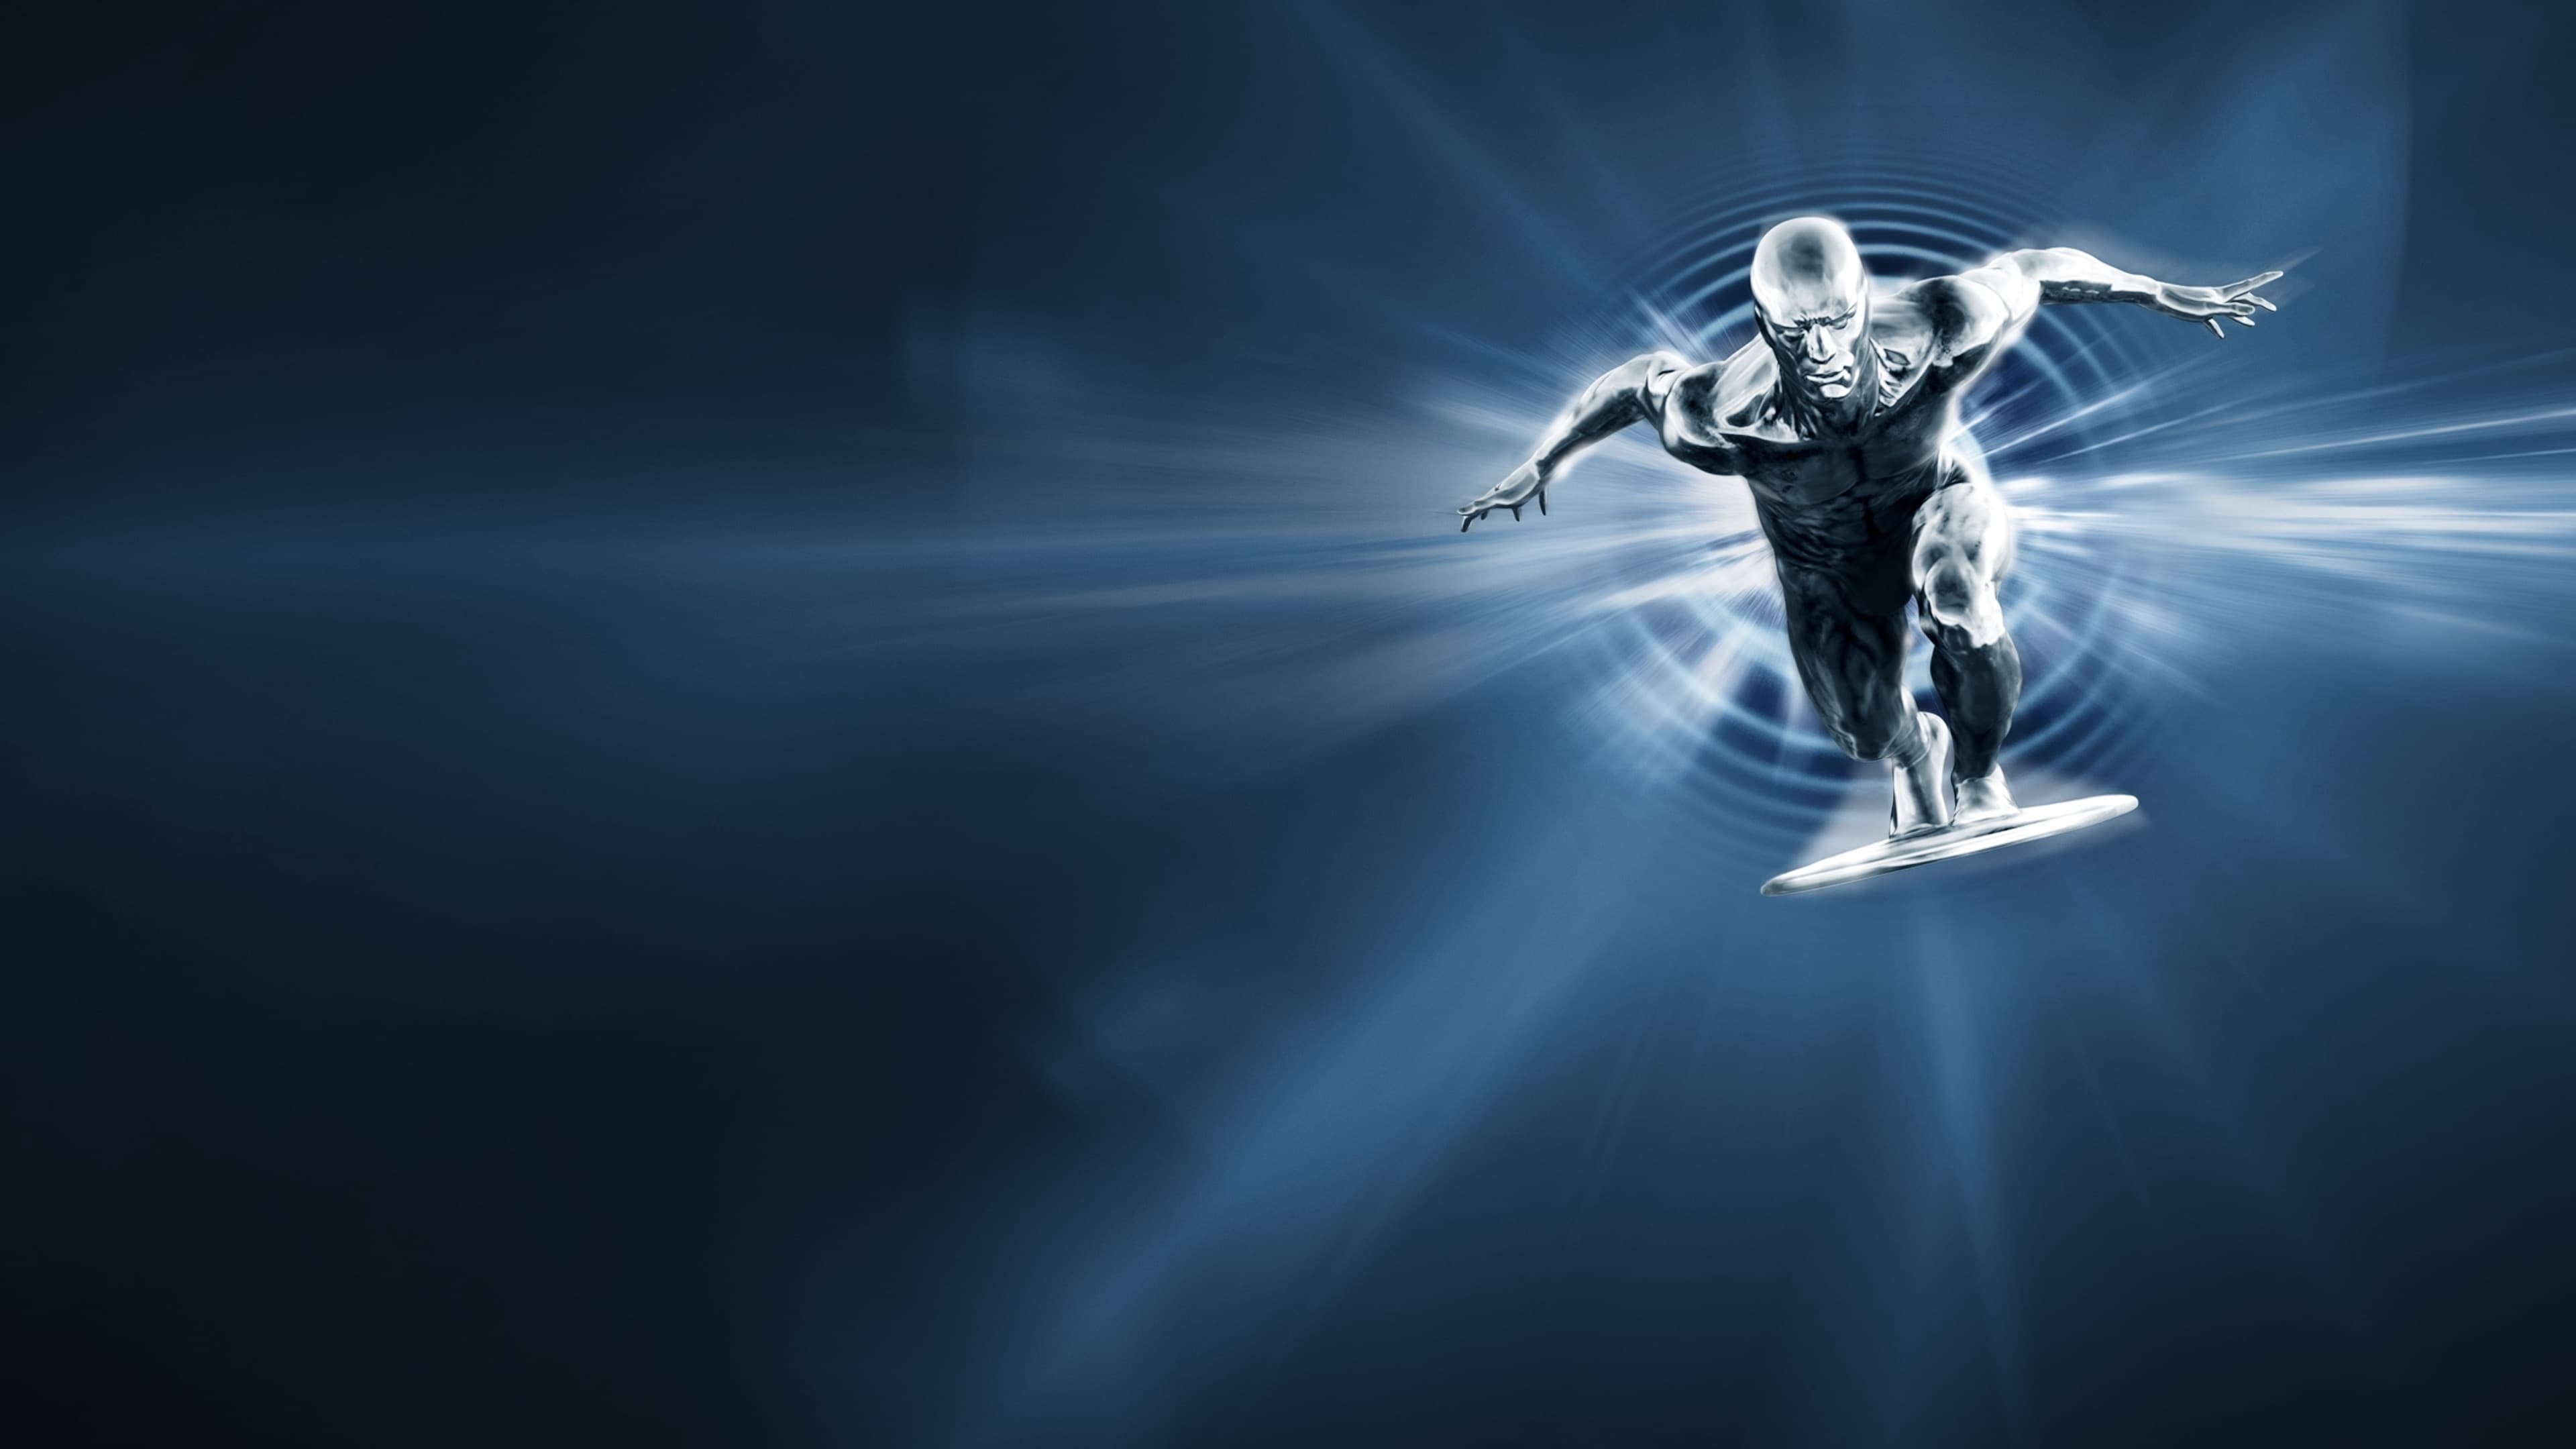 Silver Surfer in 4K, Marvel's cosmic hero, Galactus servant, Super strength, 3840x2160 4K Desktop